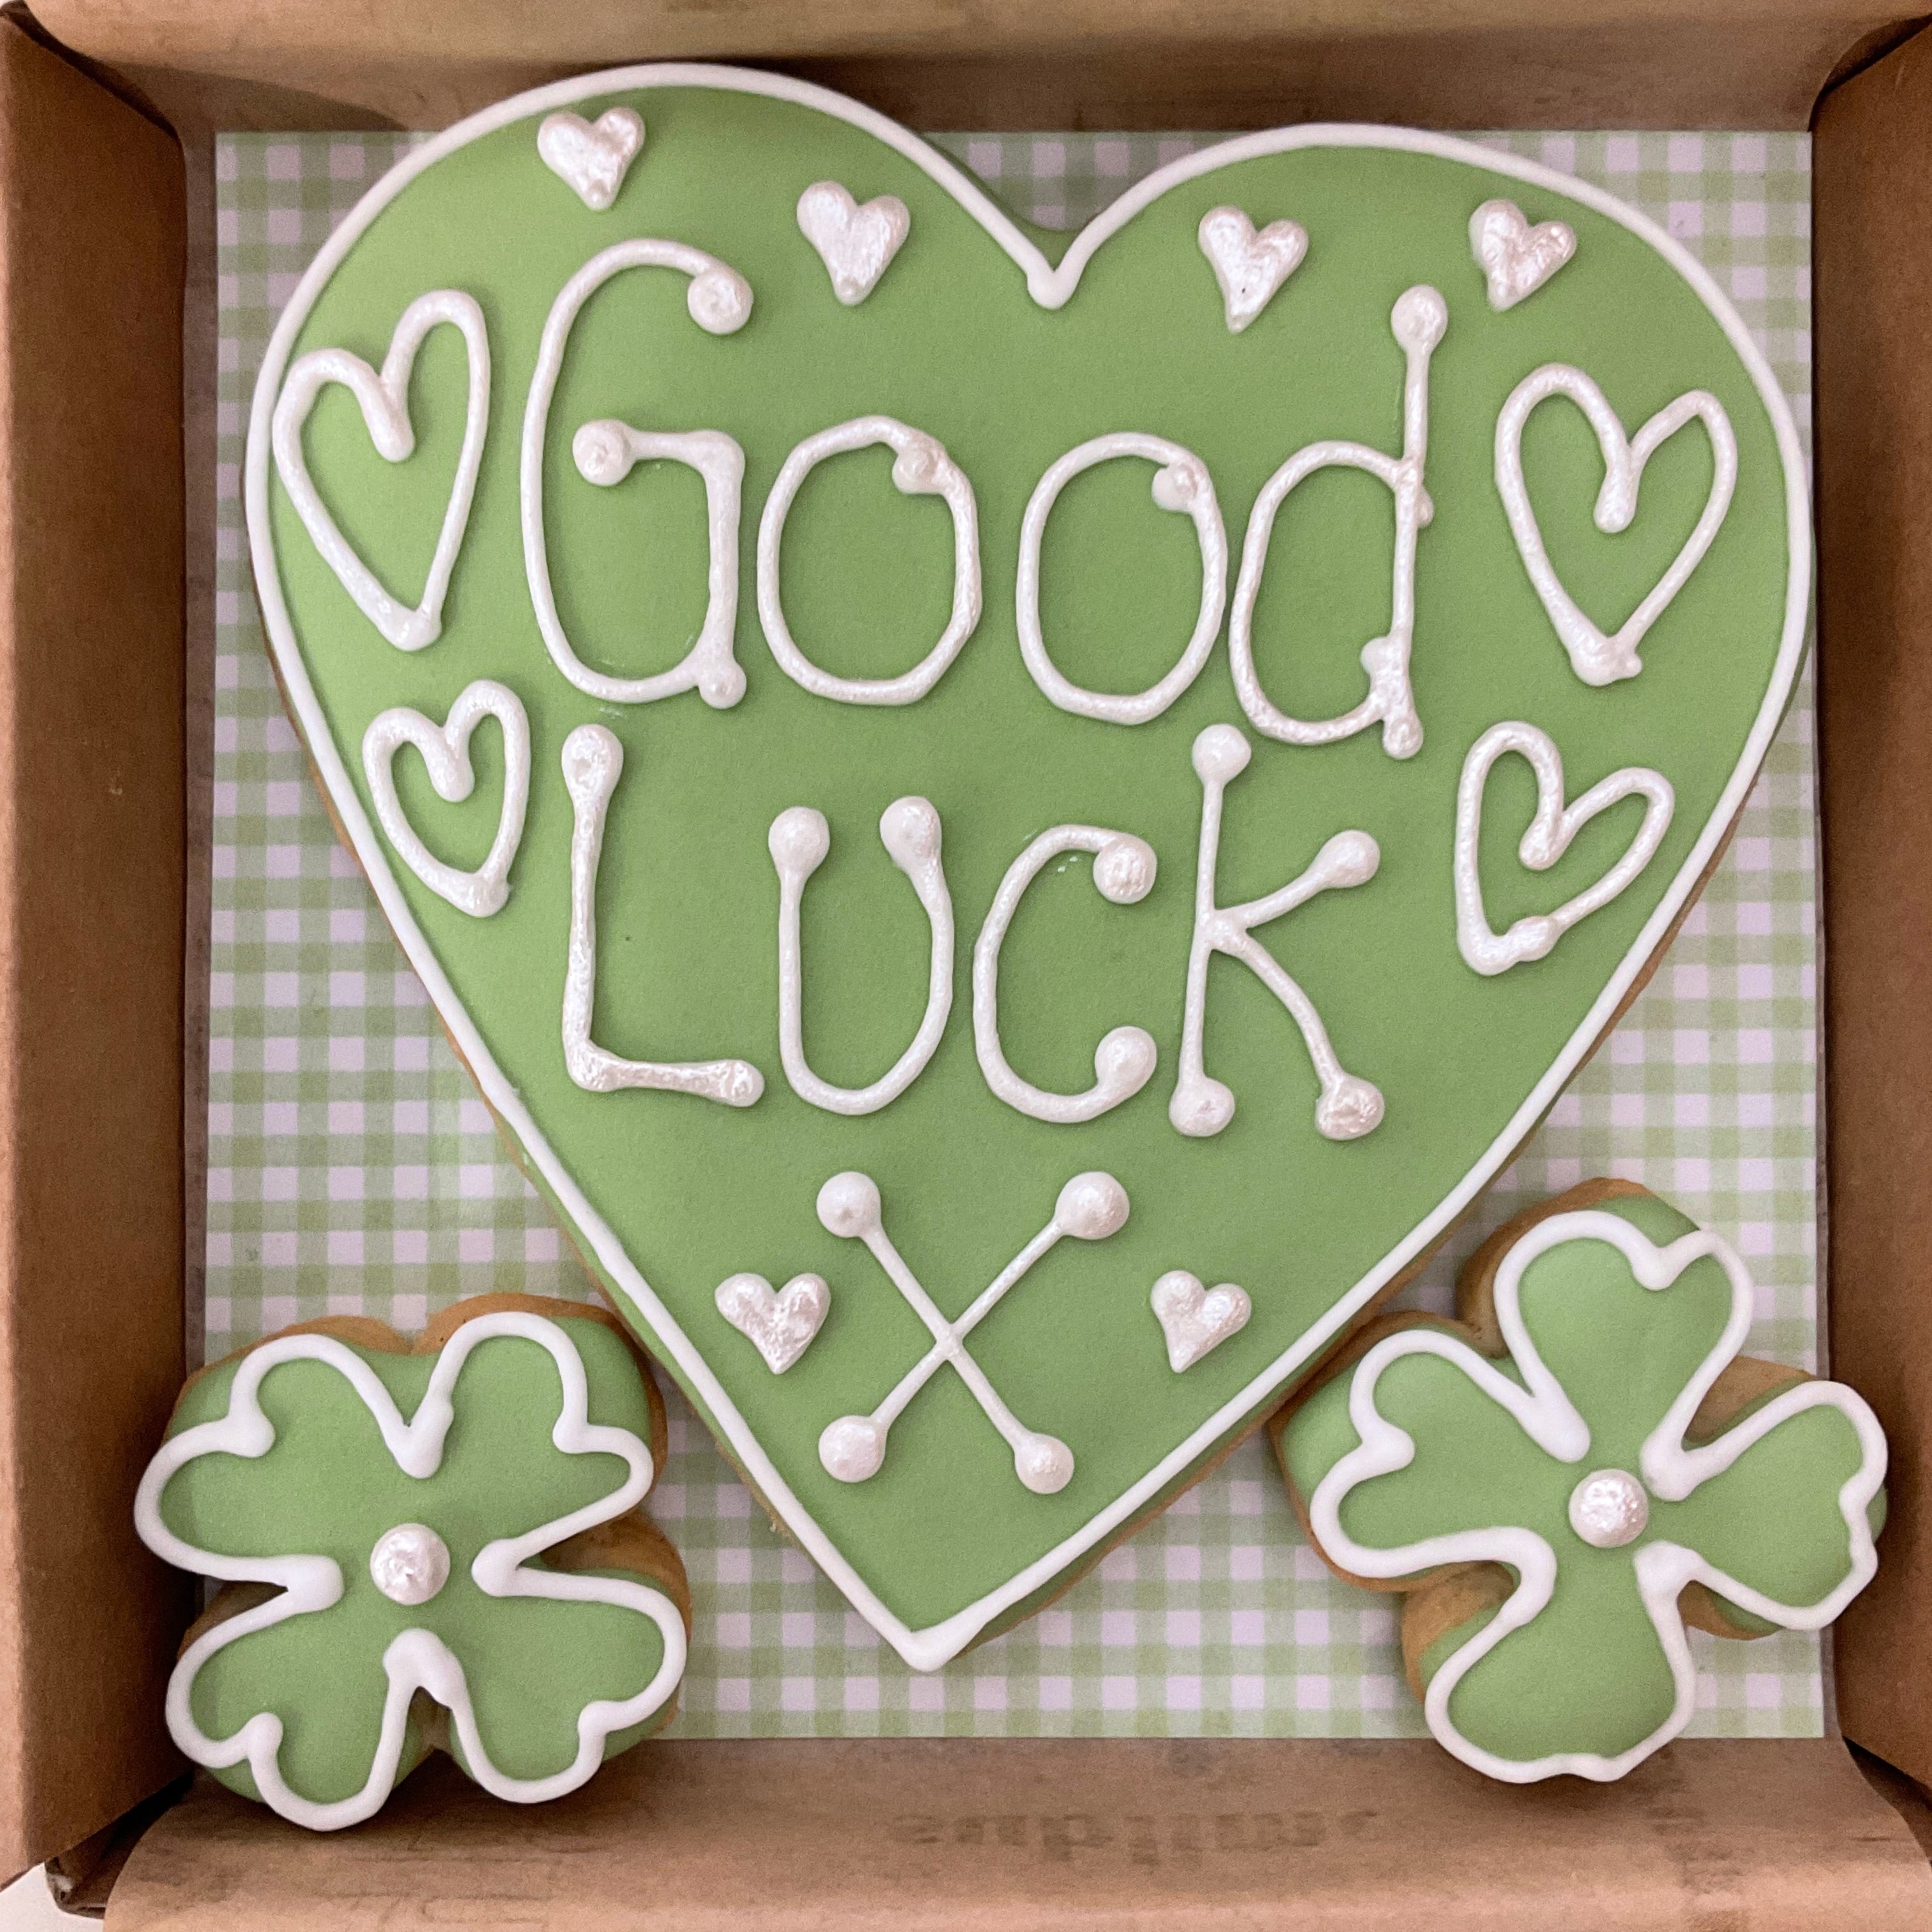 Good Luck Heart Cookie Card